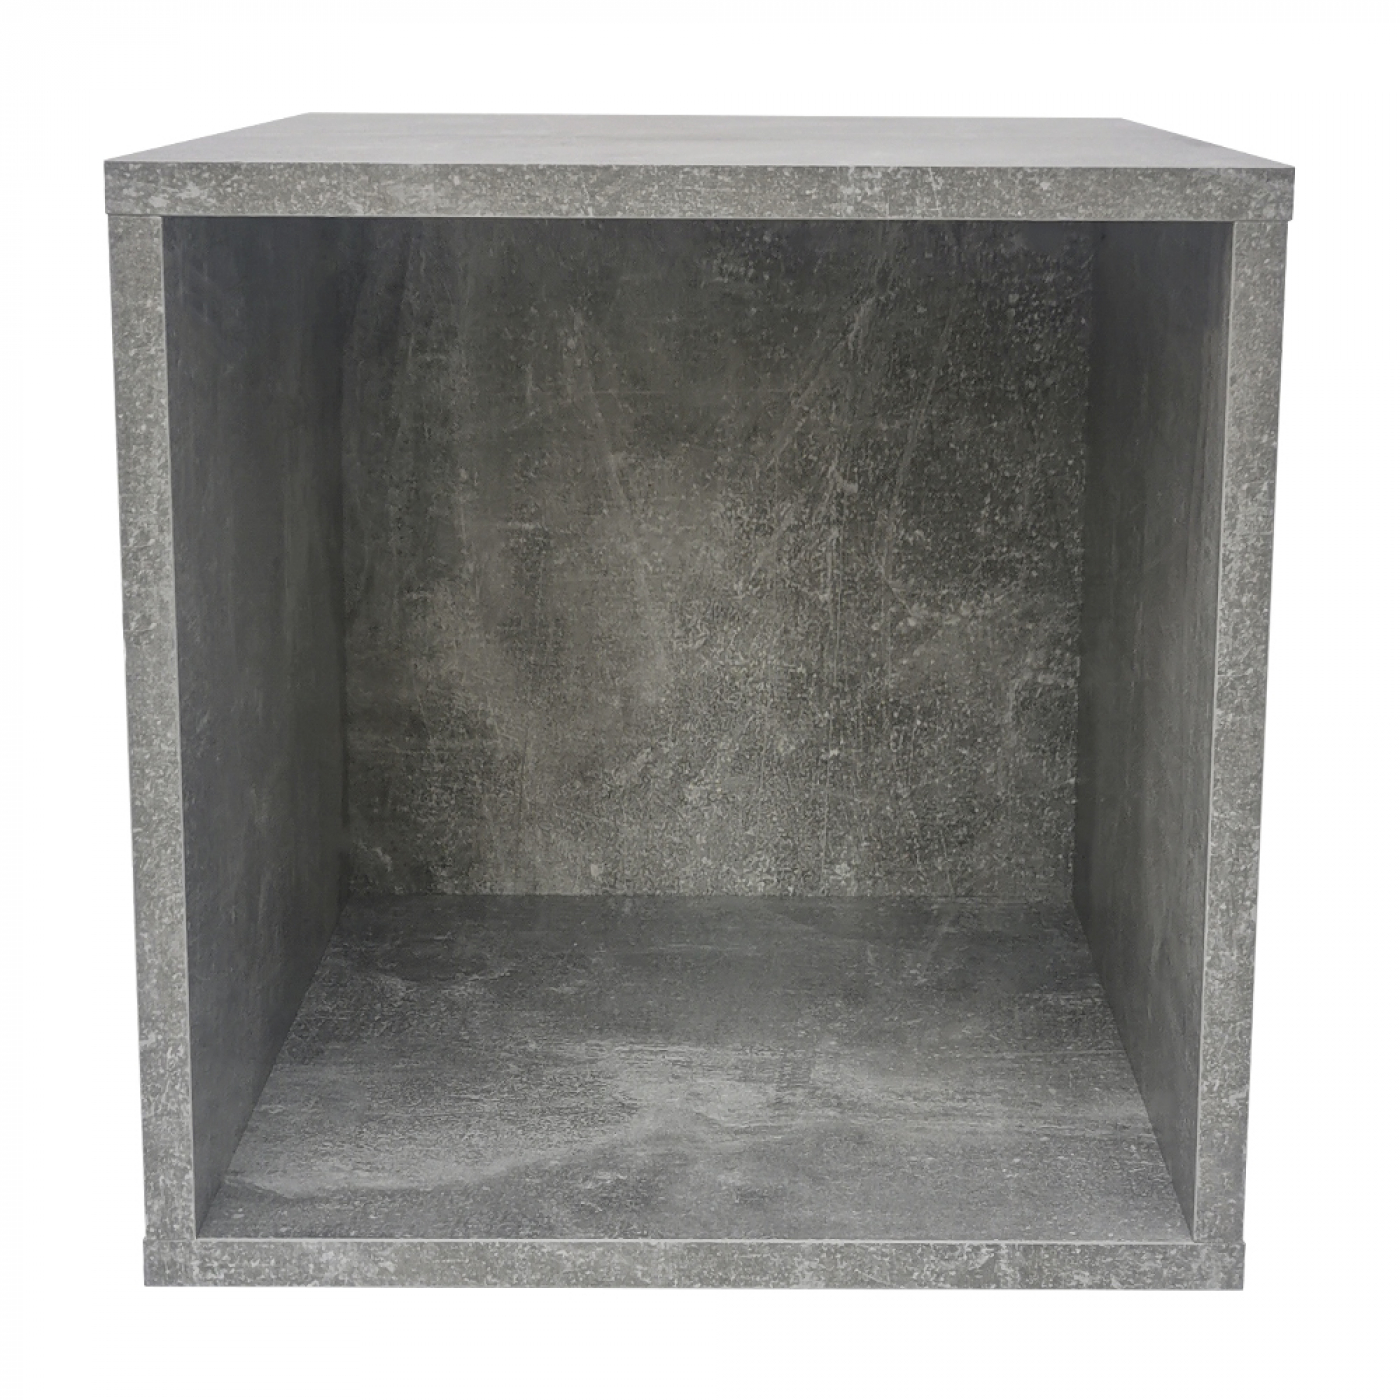 Opbergkubus Vakkie multifunctioneel vierkant – stapelbaar opbergsysteem – grijs industrieel beton look